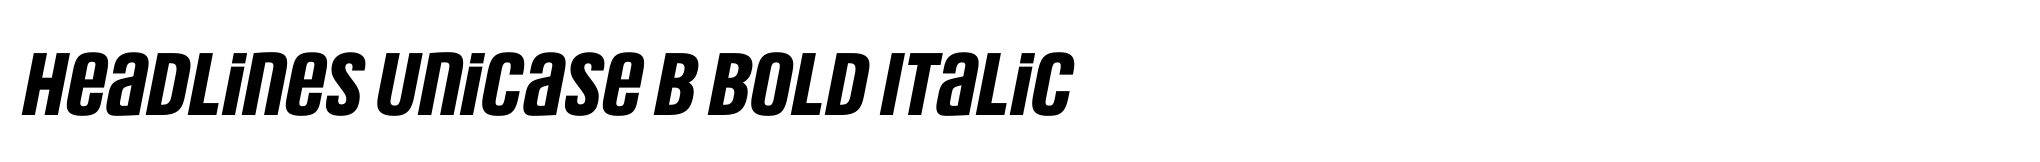 Headlines Unicase B Bold Italic image